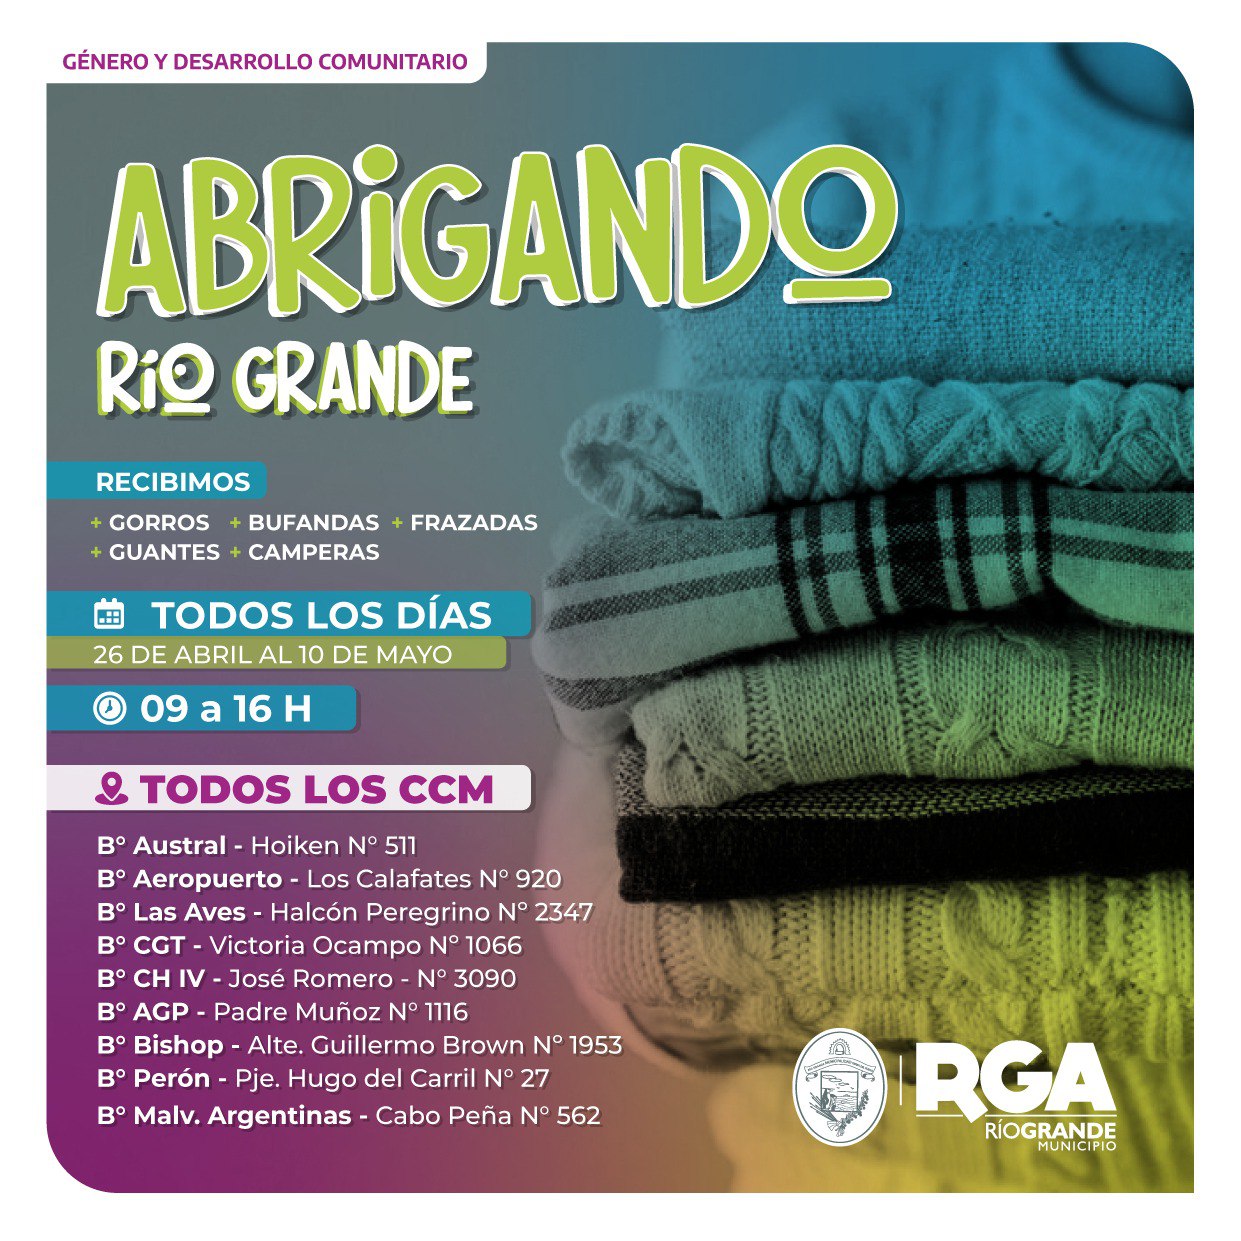 Colecta solidaria "Abrigando Río Grande"